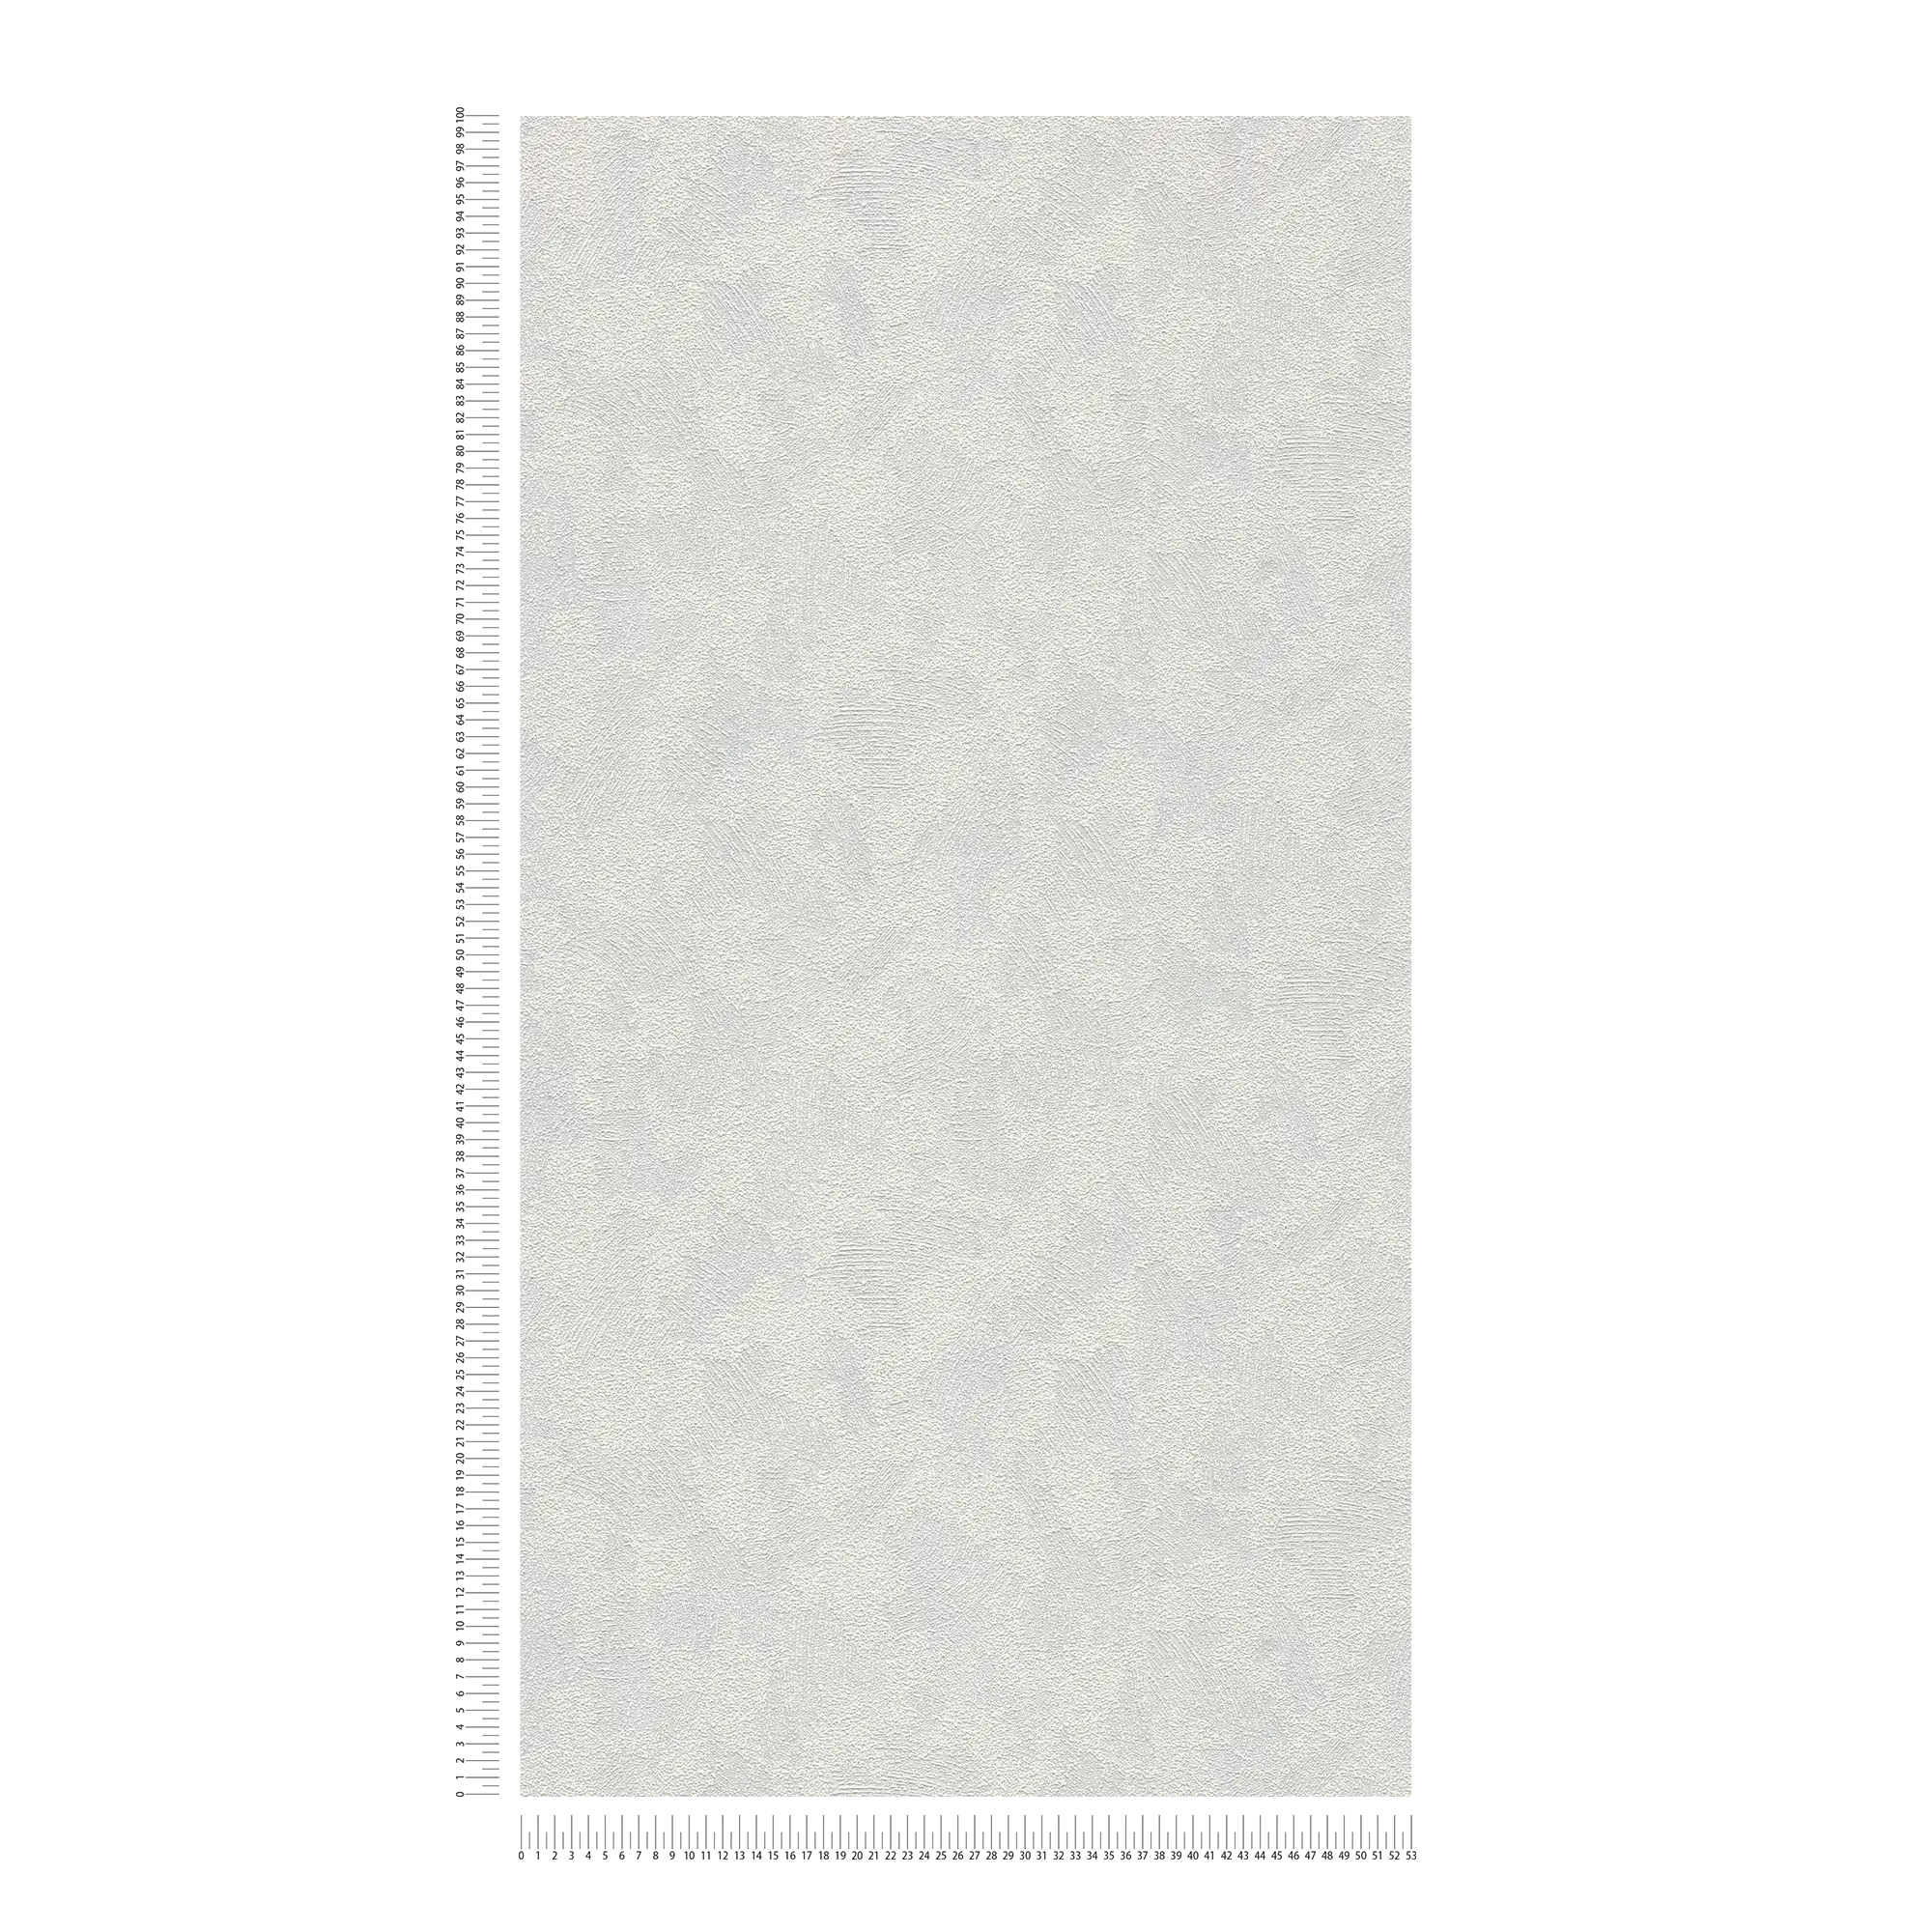             Textuurbehang met driedimensionale gipslook - overschilderbaar, wit
        